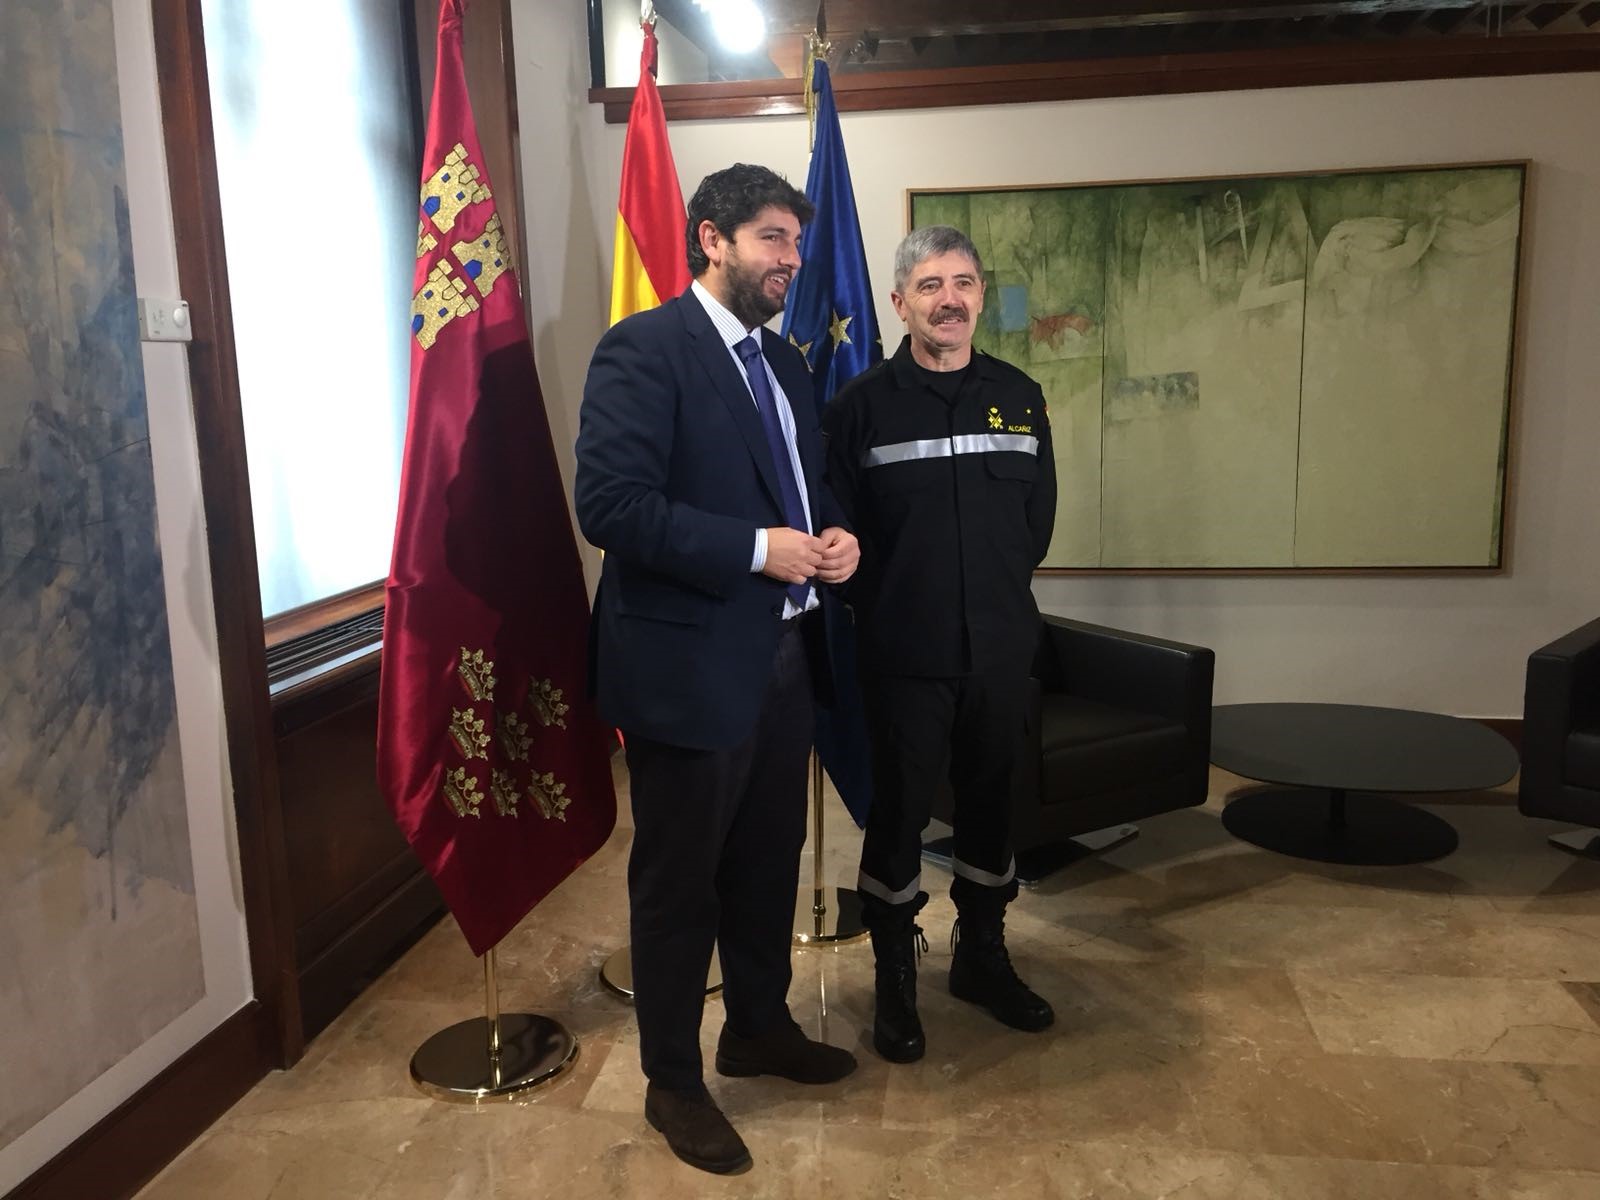 El jefe de la UME presenta el “Ejercicio Conjunto Combinado Región de Murcia 2018” a las autoridades regionales